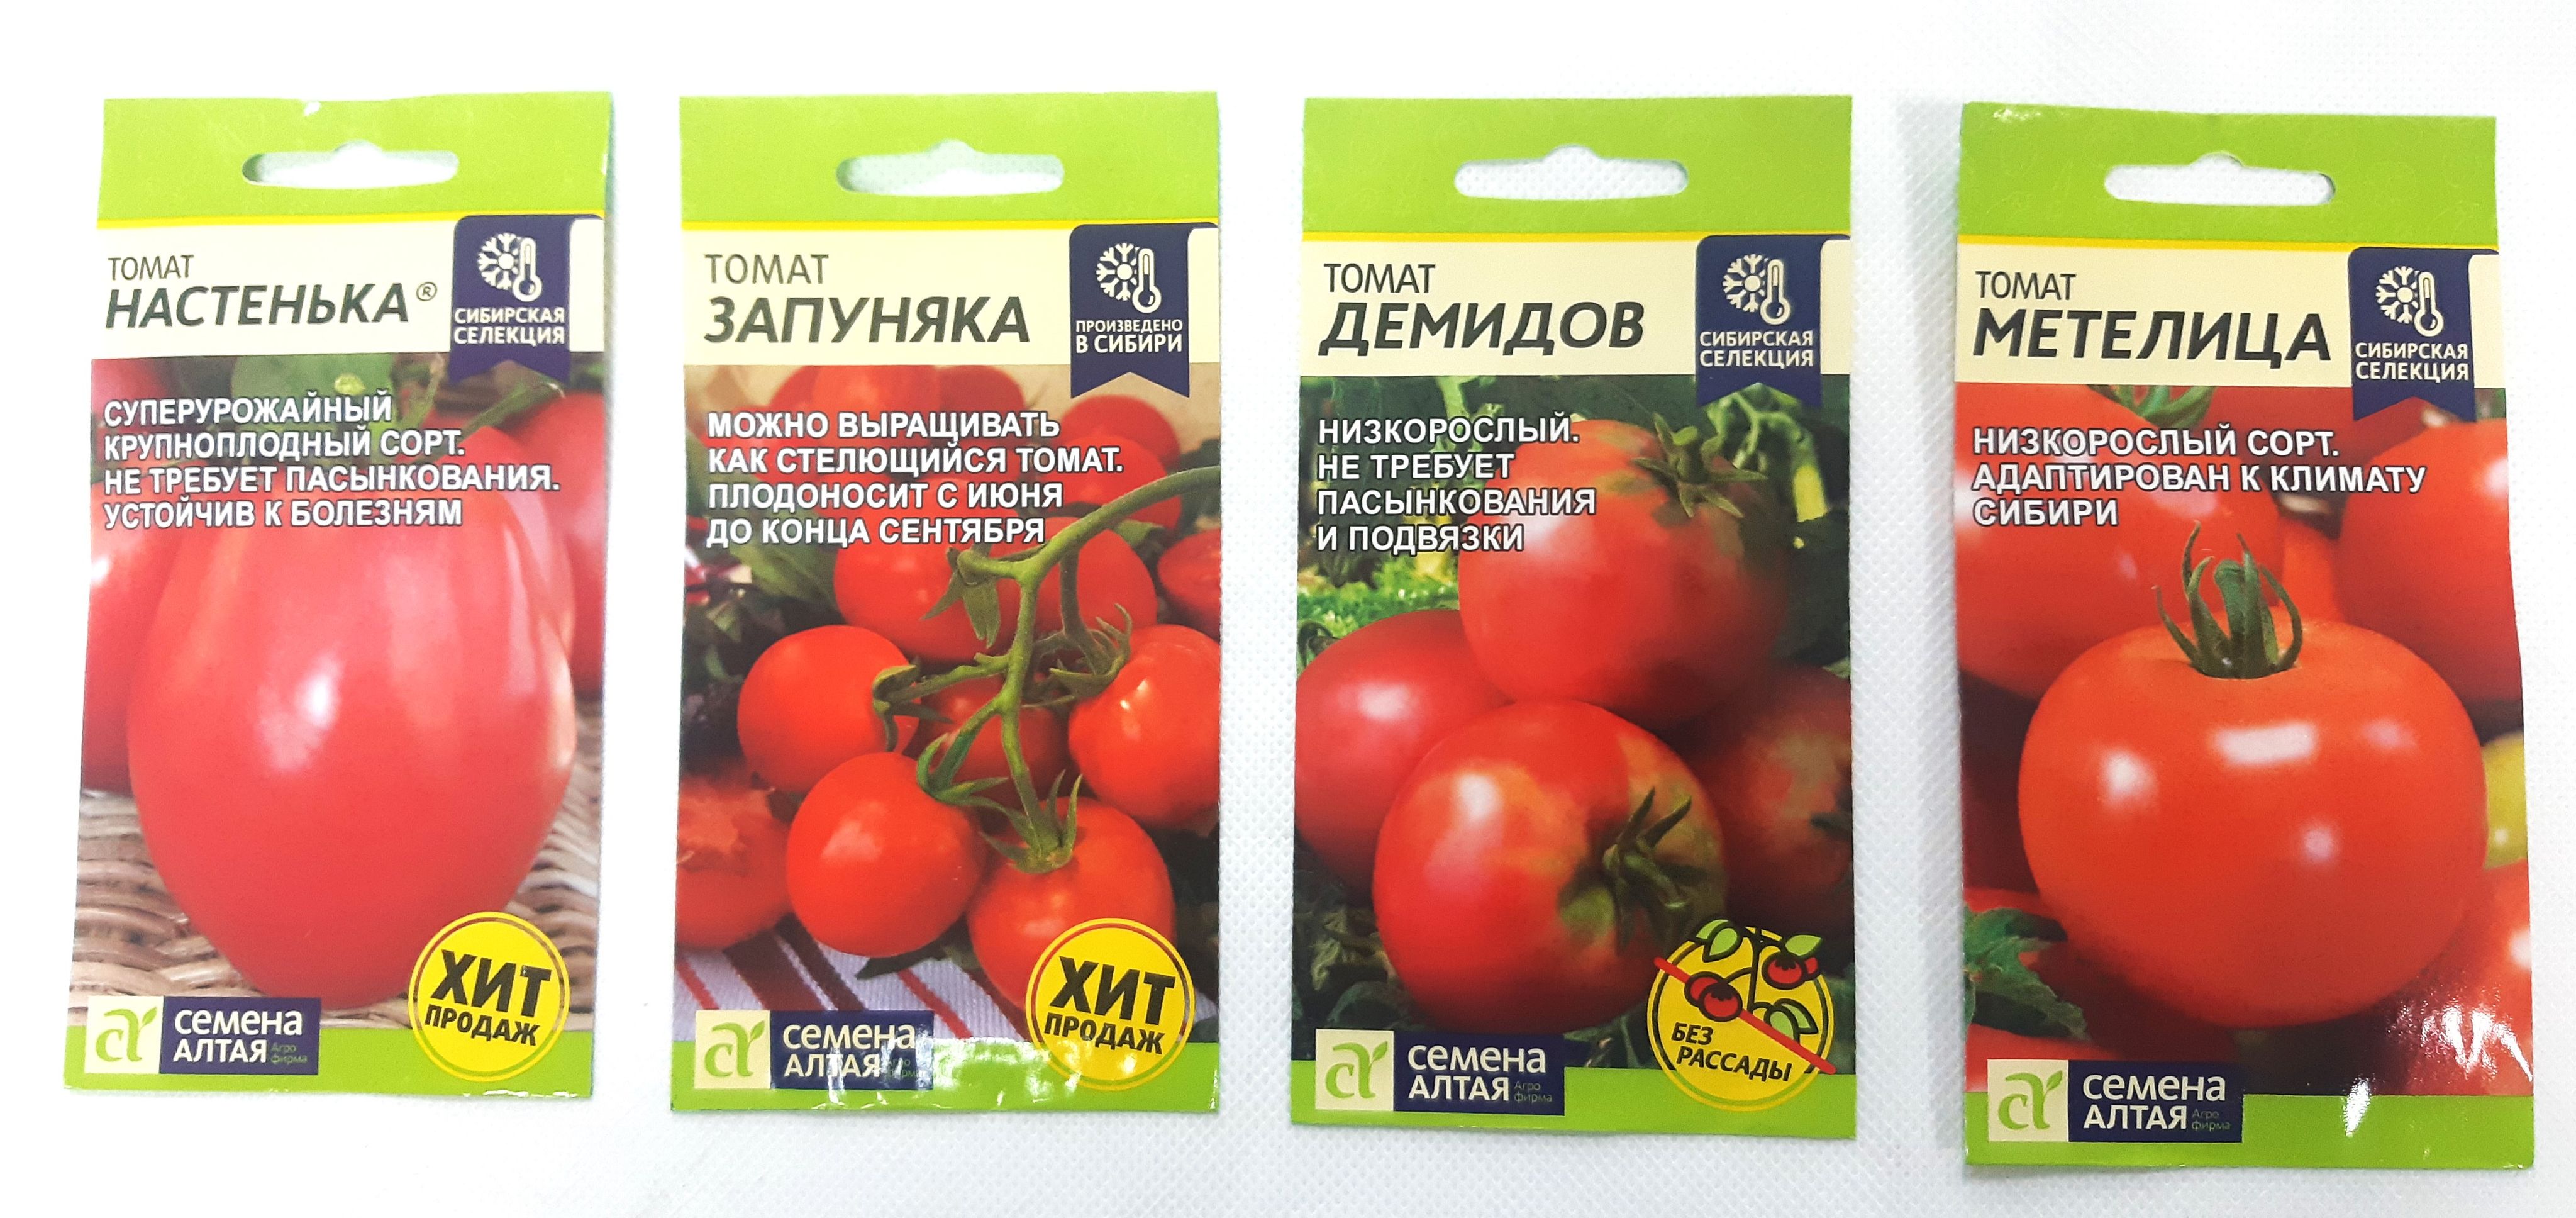 Купить семена томата настенька